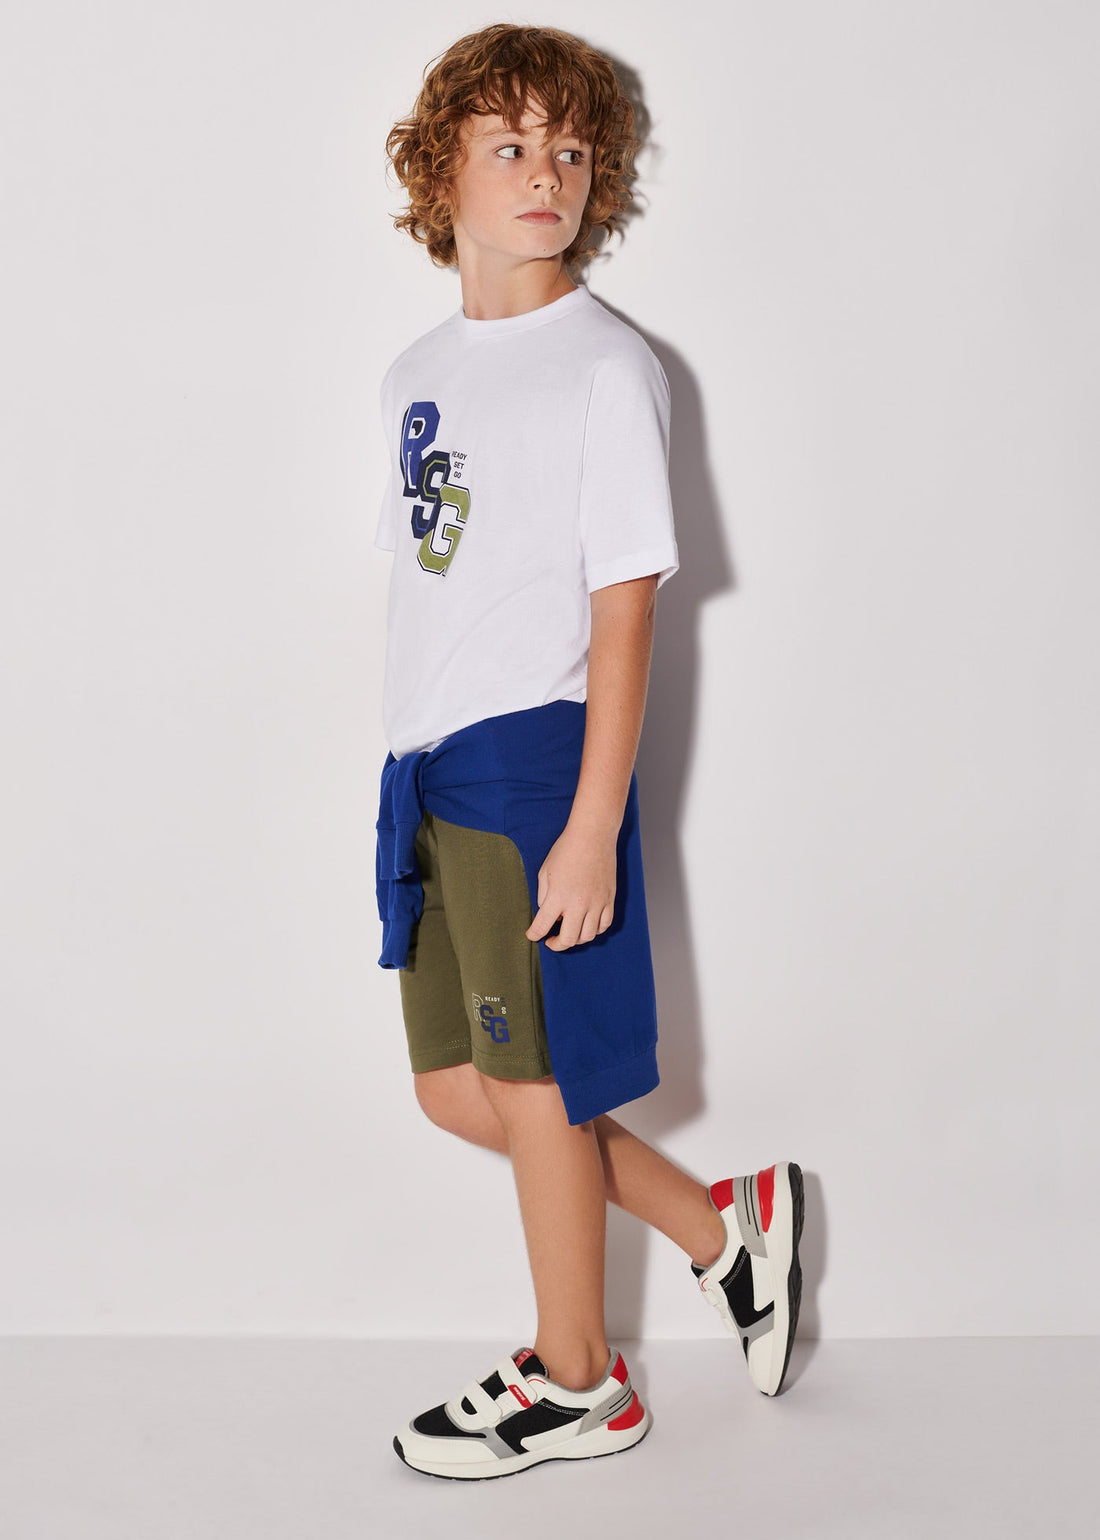 Mayoral 6652-76 Komplet z bluzą i koszulką chłopiec kolor persja